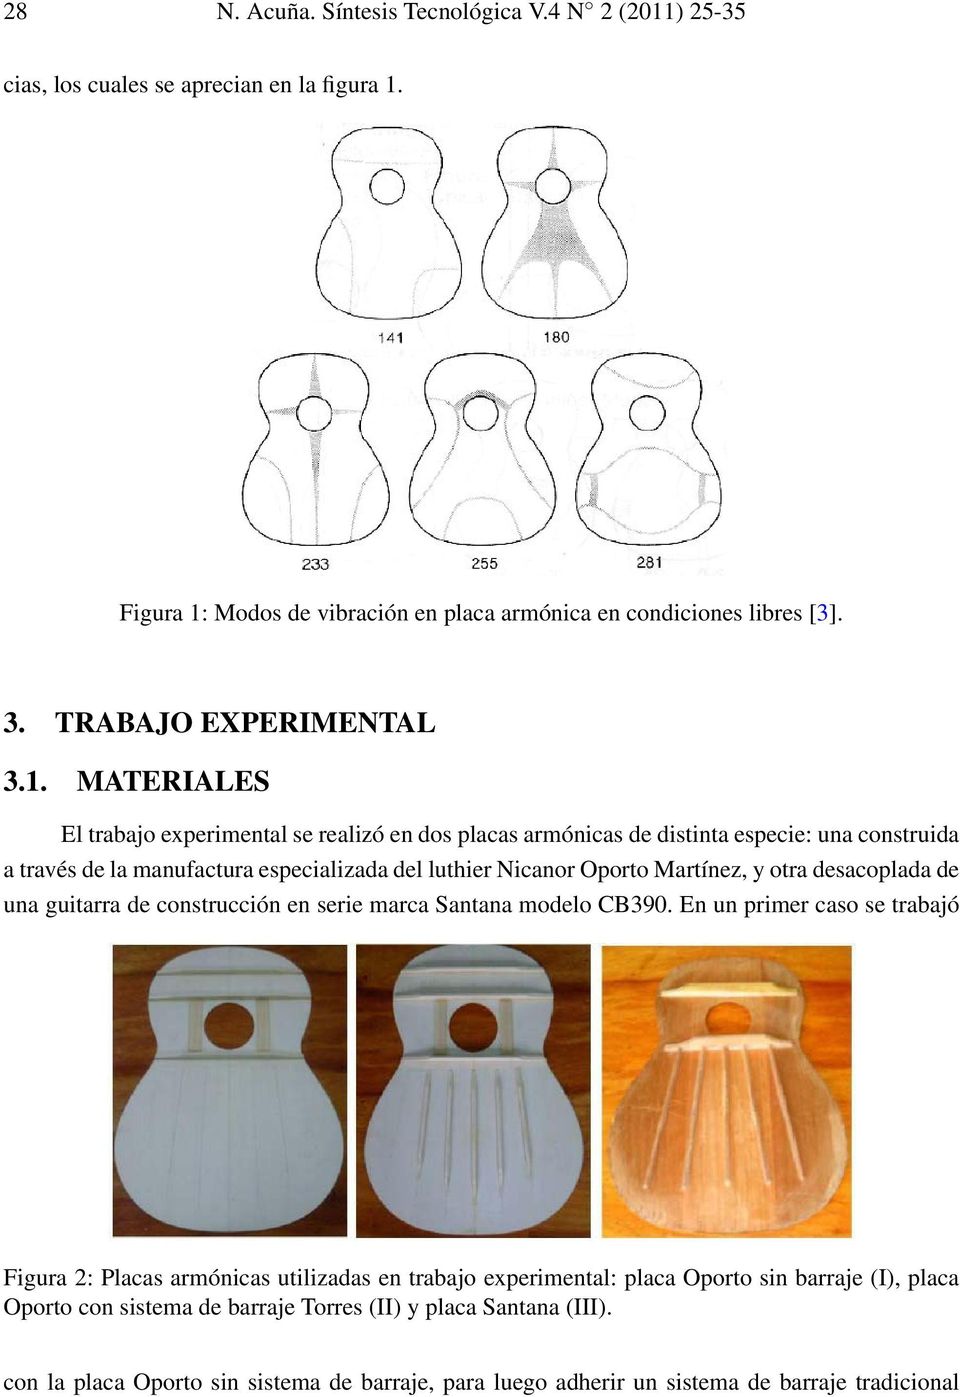 MATERIALES El trabajo experimental se realizó en dos placas armónicas de distinta especie: una construida a través de la manufactura especializada del luthier Nicanor Oporto Martínez, y otra